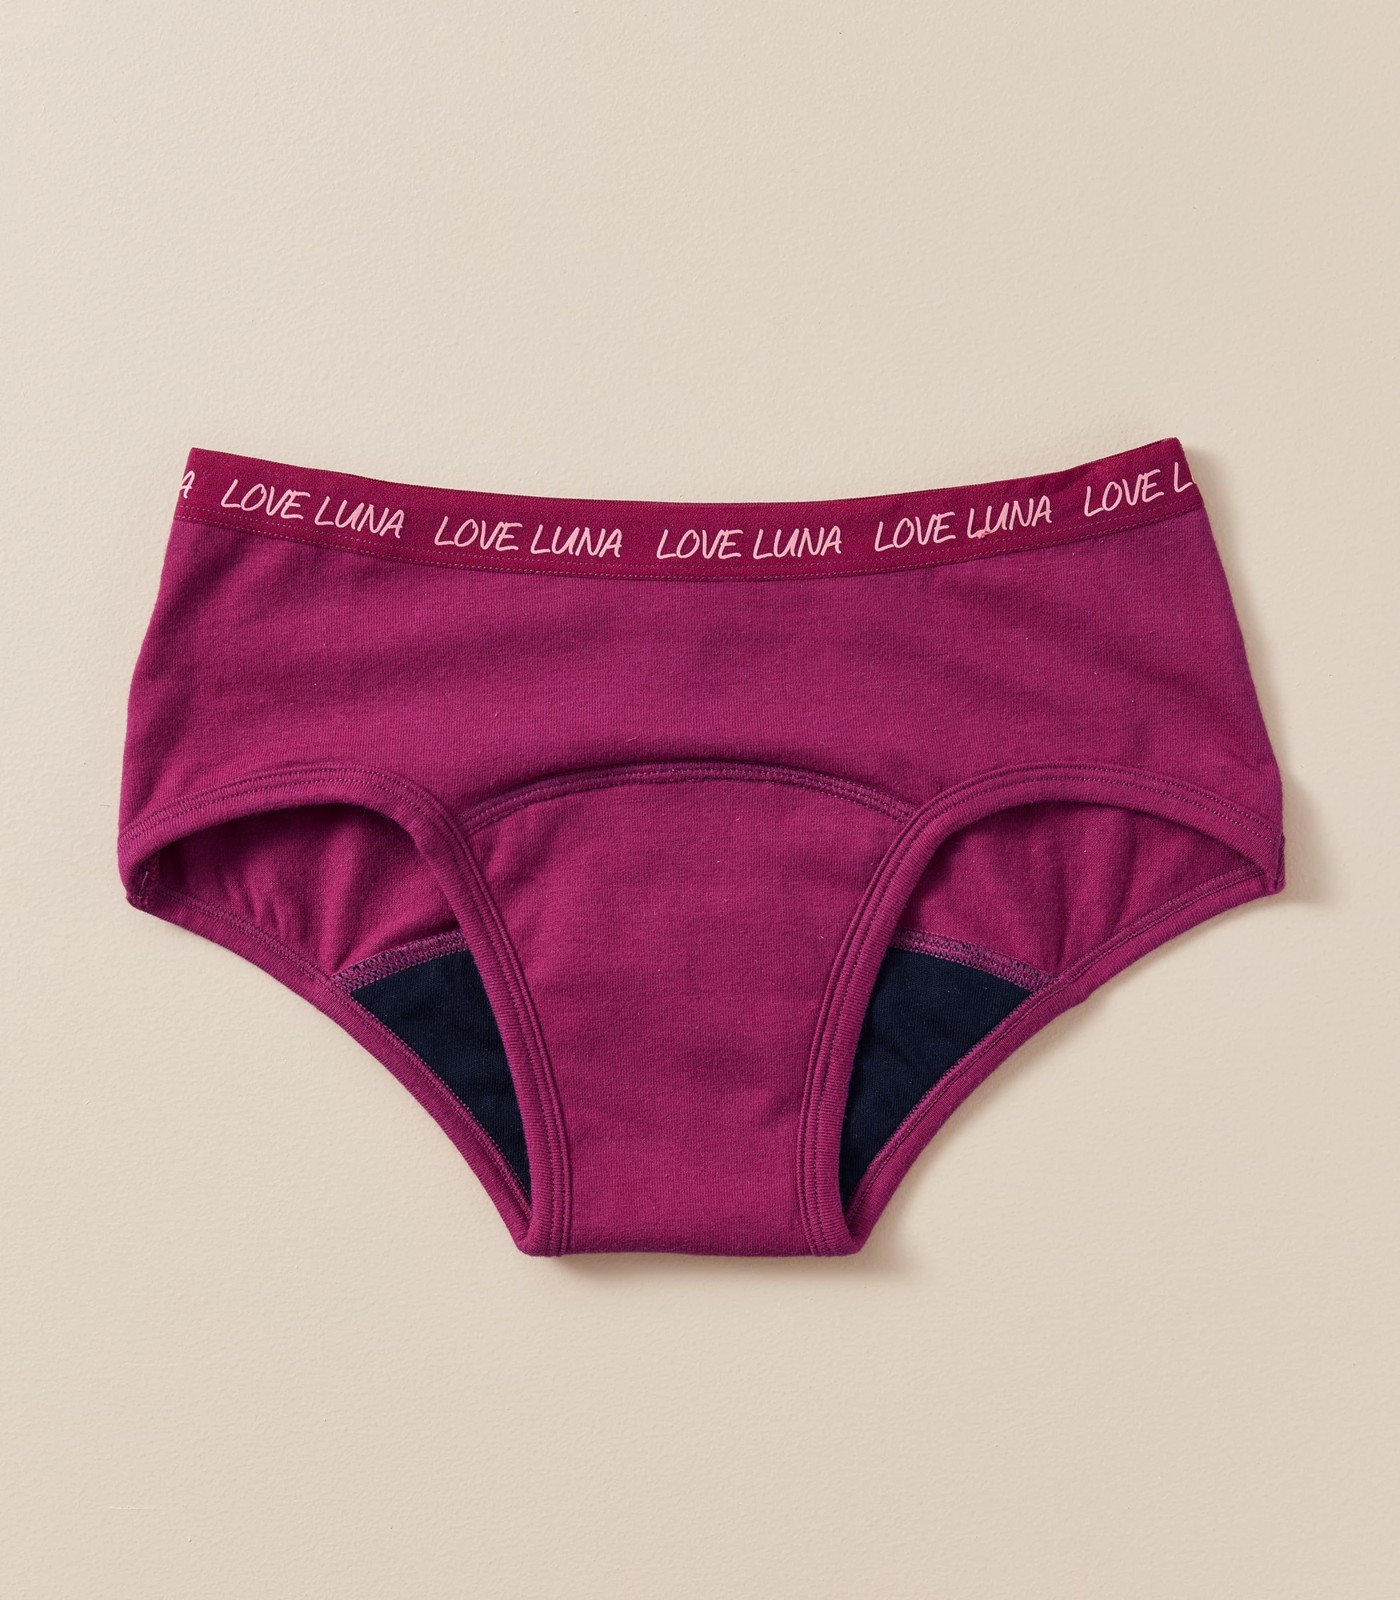 Love Luna Teen / Tween Boyleg Period Pants - Light-Medium Flow